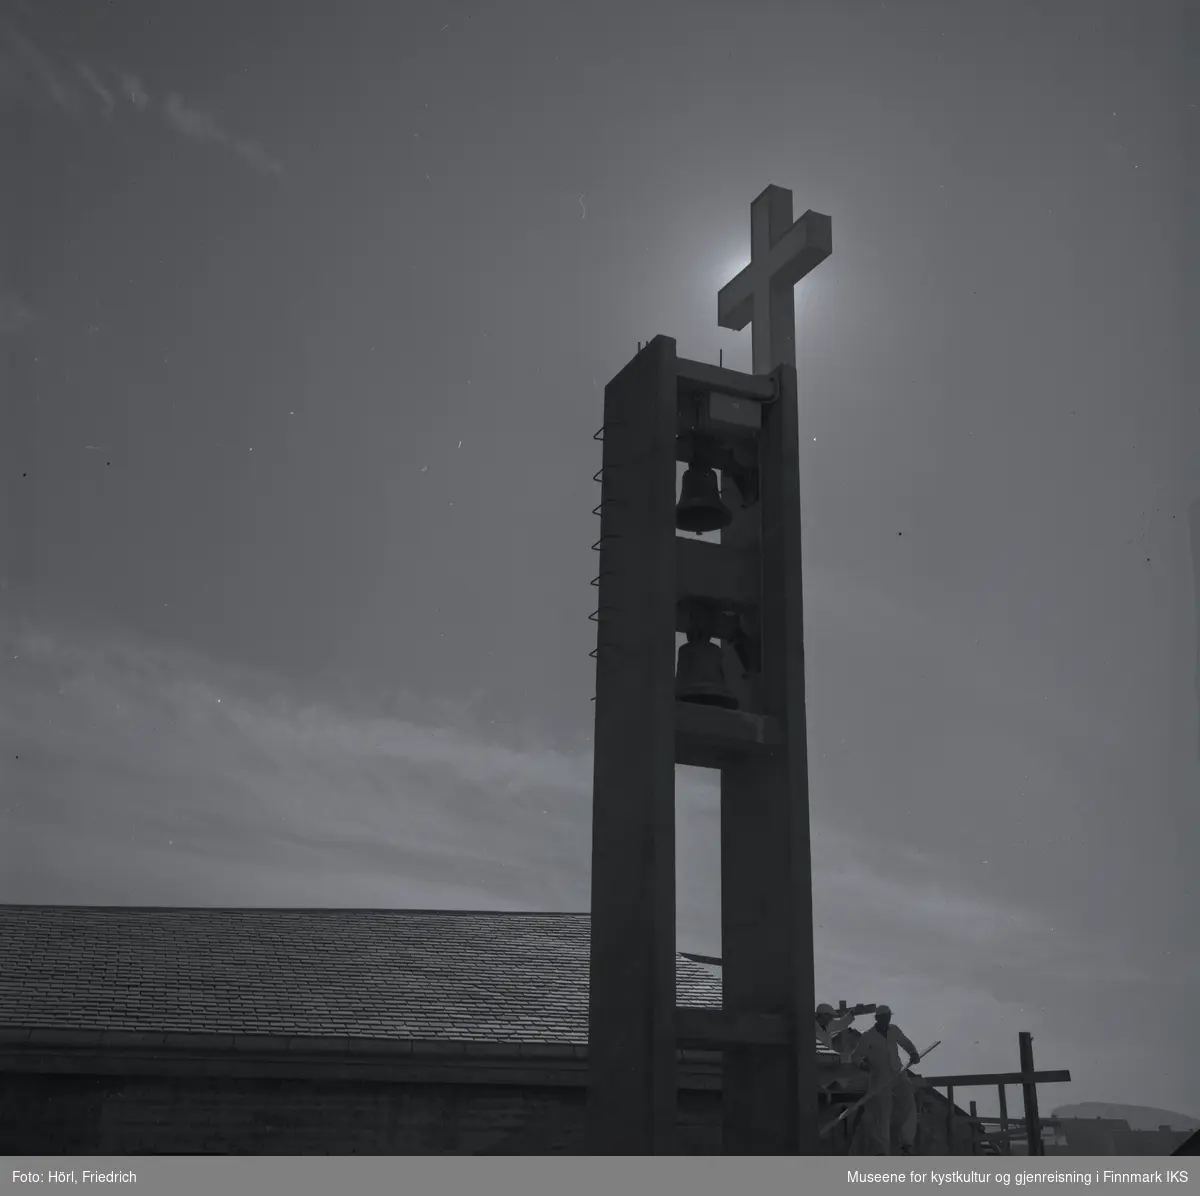 Bildet viser klokketårnet til den katolske kirka St. Mikael i Hammerfest i motlys av sola i 1958. Bildet er tatt fra sidebygget ut mot Sorøysundet der man ser Håja fjellet. Taket til kirka er ferdig bygd og belagt med skifer. På nedsida av kirka står det fortsatt et stillas og man kan se to arbeider der. I tårnet henger igjen de klokkene som allerede tilhørte til kirka før ødeleggelsene under andre verdenskrig. Det lyssatte korset er montert, men det er foreløpig kun sola som skinner.